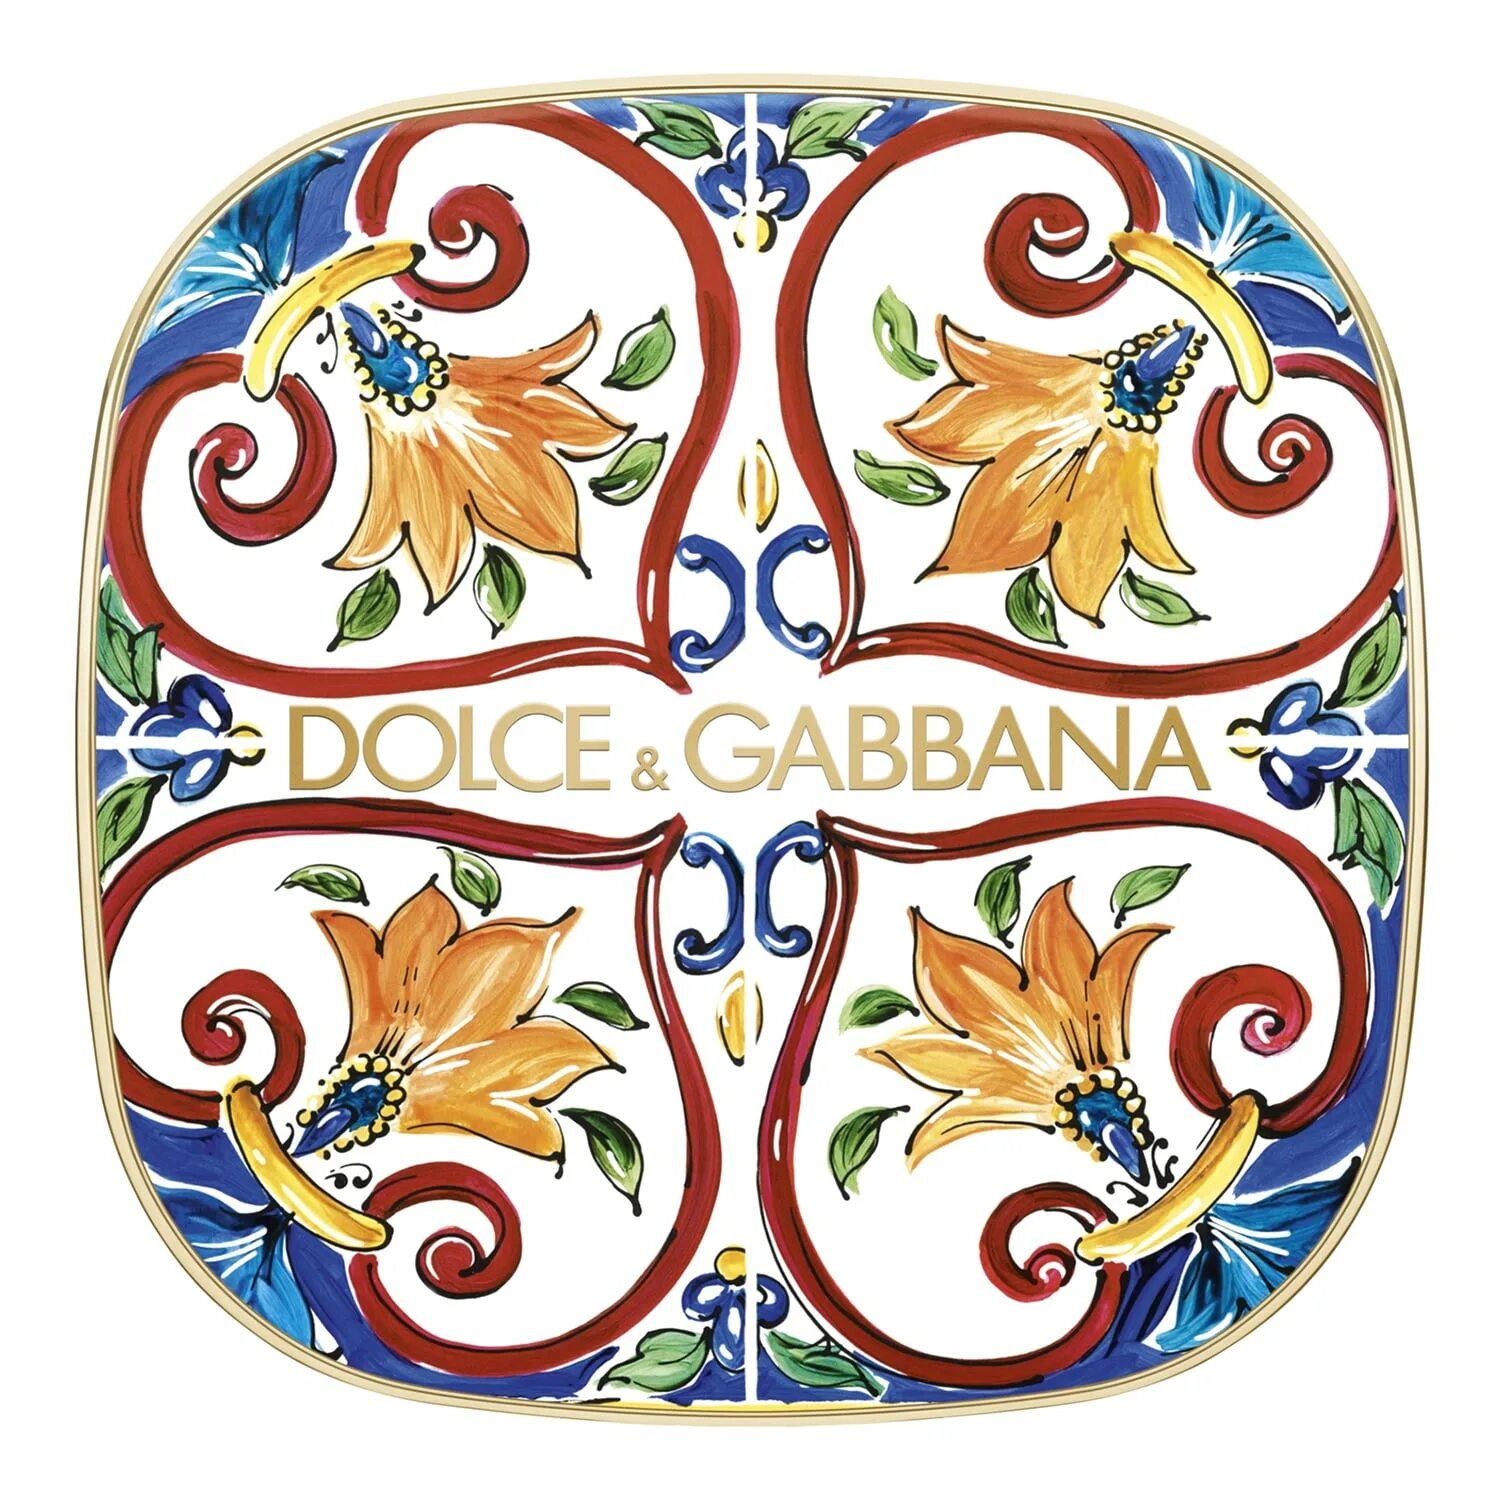 Хайлайтер dolce gabbana. Dolce Gabbana Solar Glow. Румяна хайлайтер Dolce Gabbana. Хайлайтер Дольче Габбана. Dolce&Gabbana Solar Glow 2.1 Apricot.